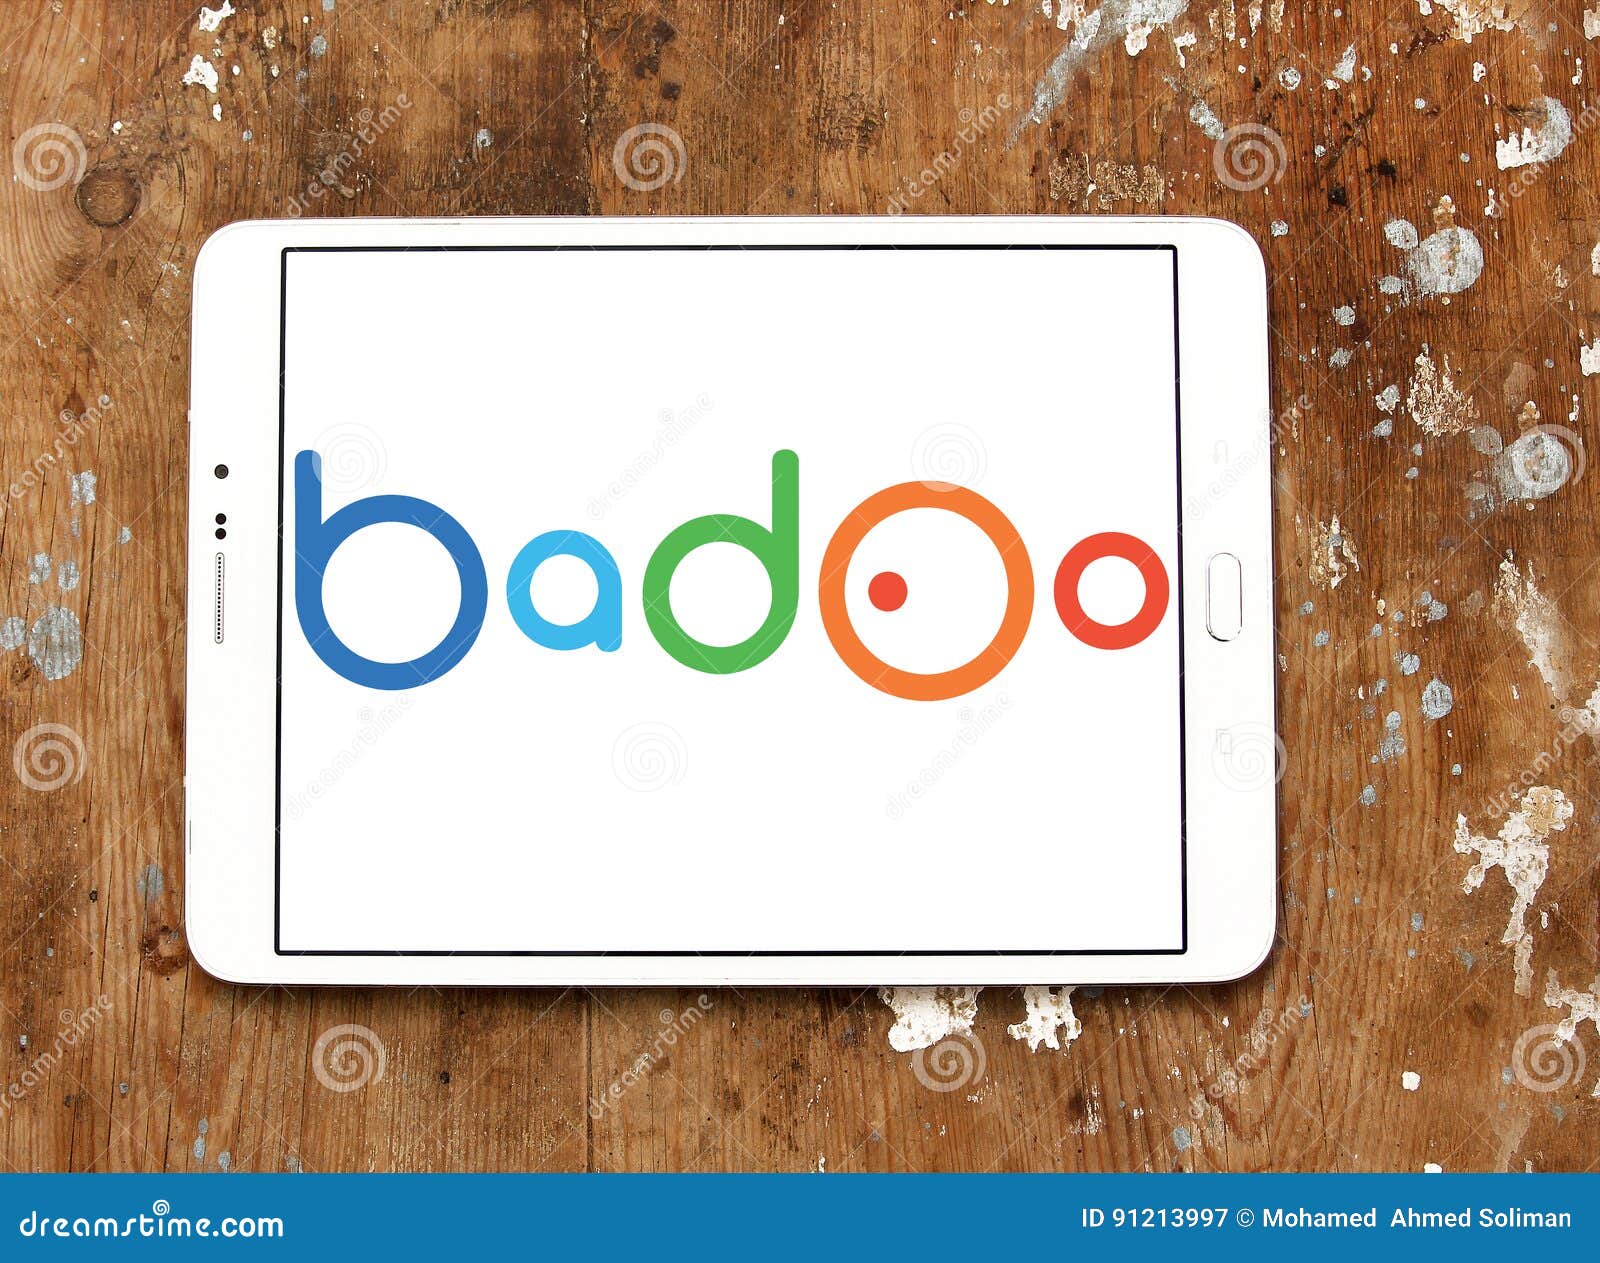 Badoo chat download